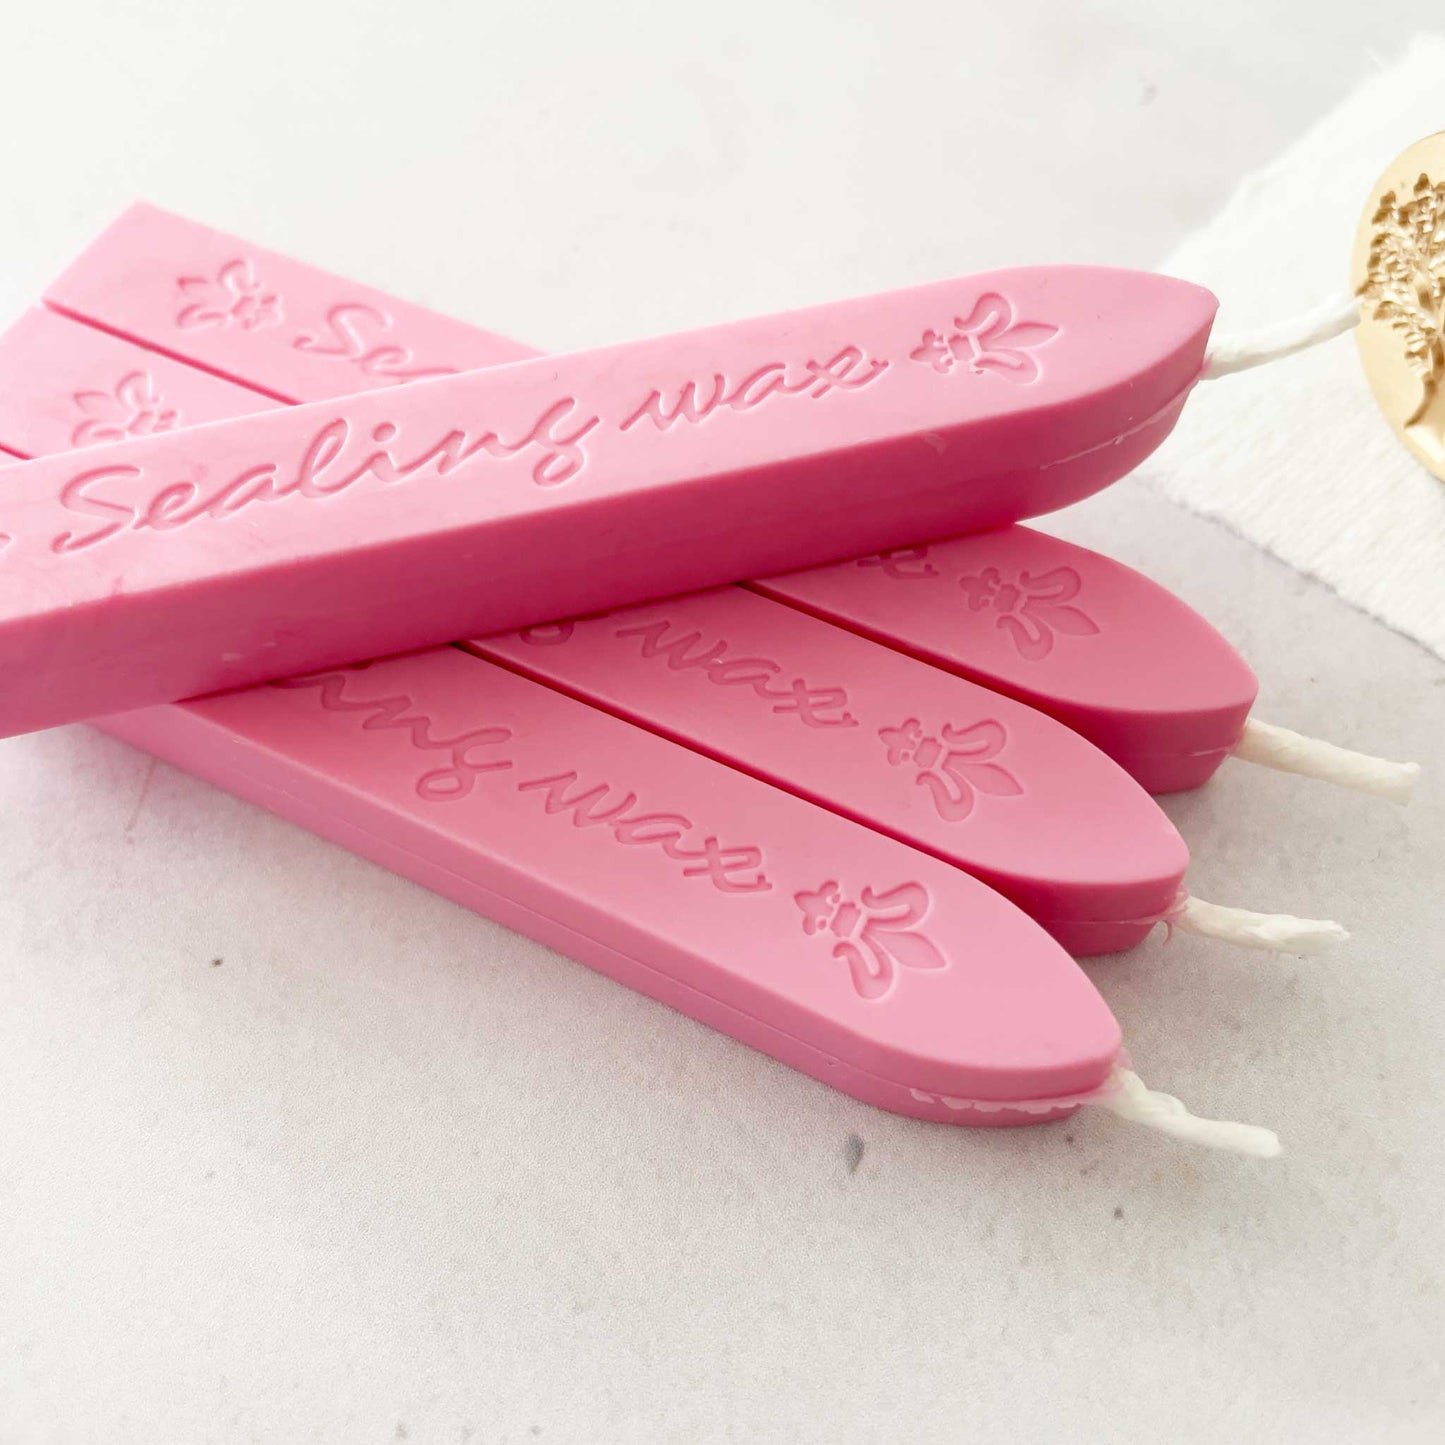 Rose Pink Sealing Wax Stick with Wick sealing wax thenaturalpapercompany   